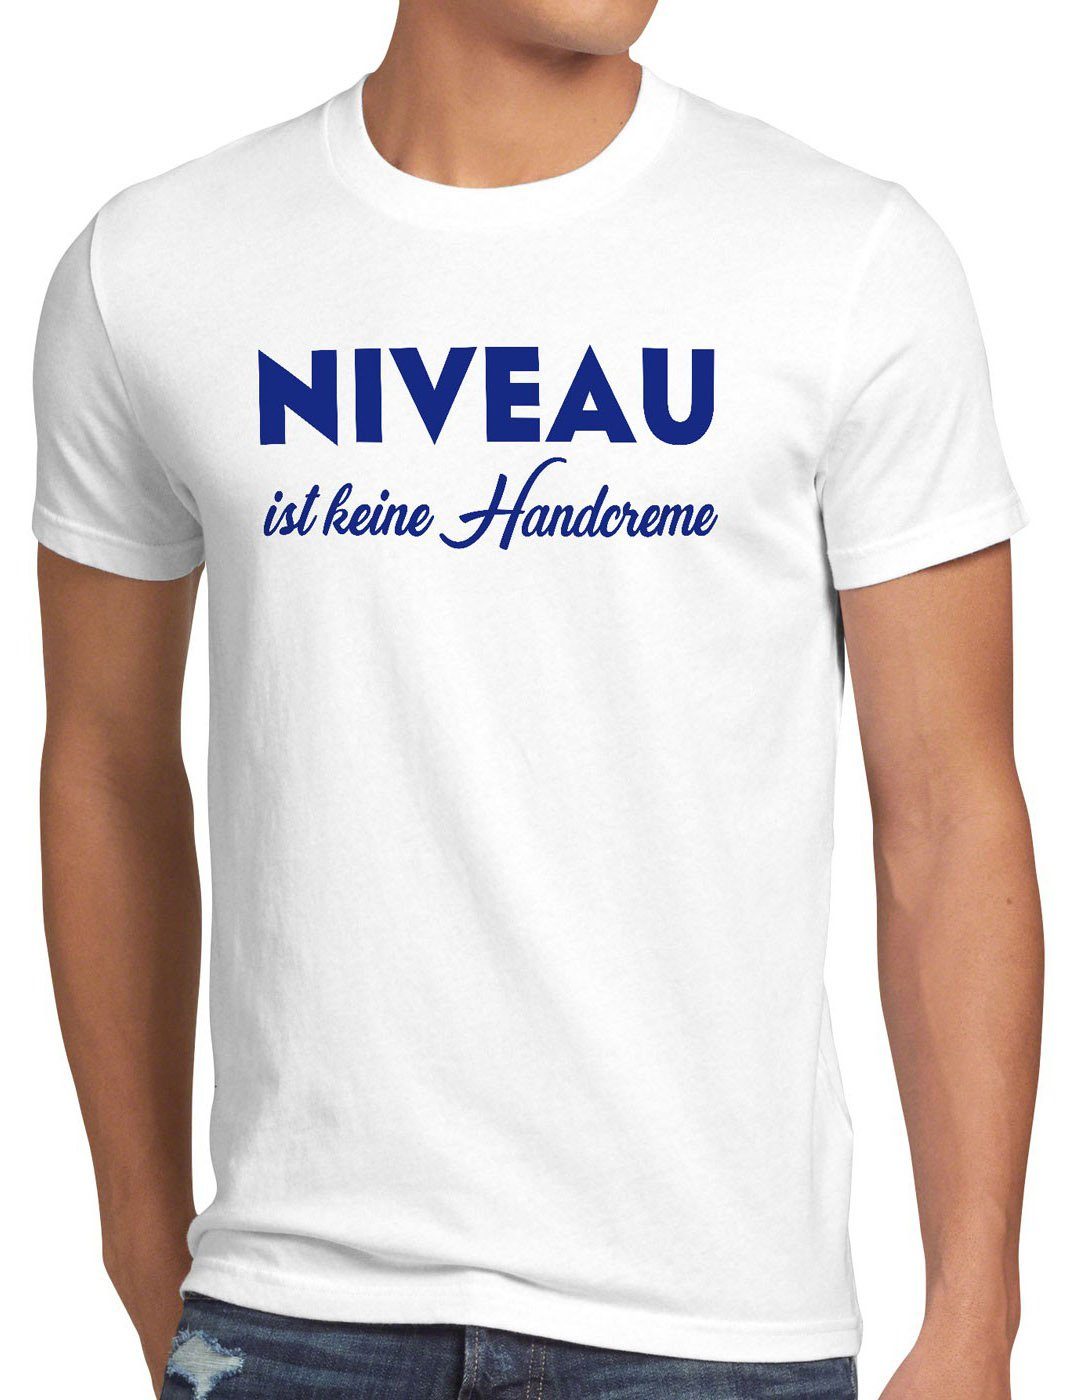 nivea lustig weiß Niveau style3 Creme Herren Funshirt keine Handcreme Print-Shirt T-Shirt Spruch ist fun